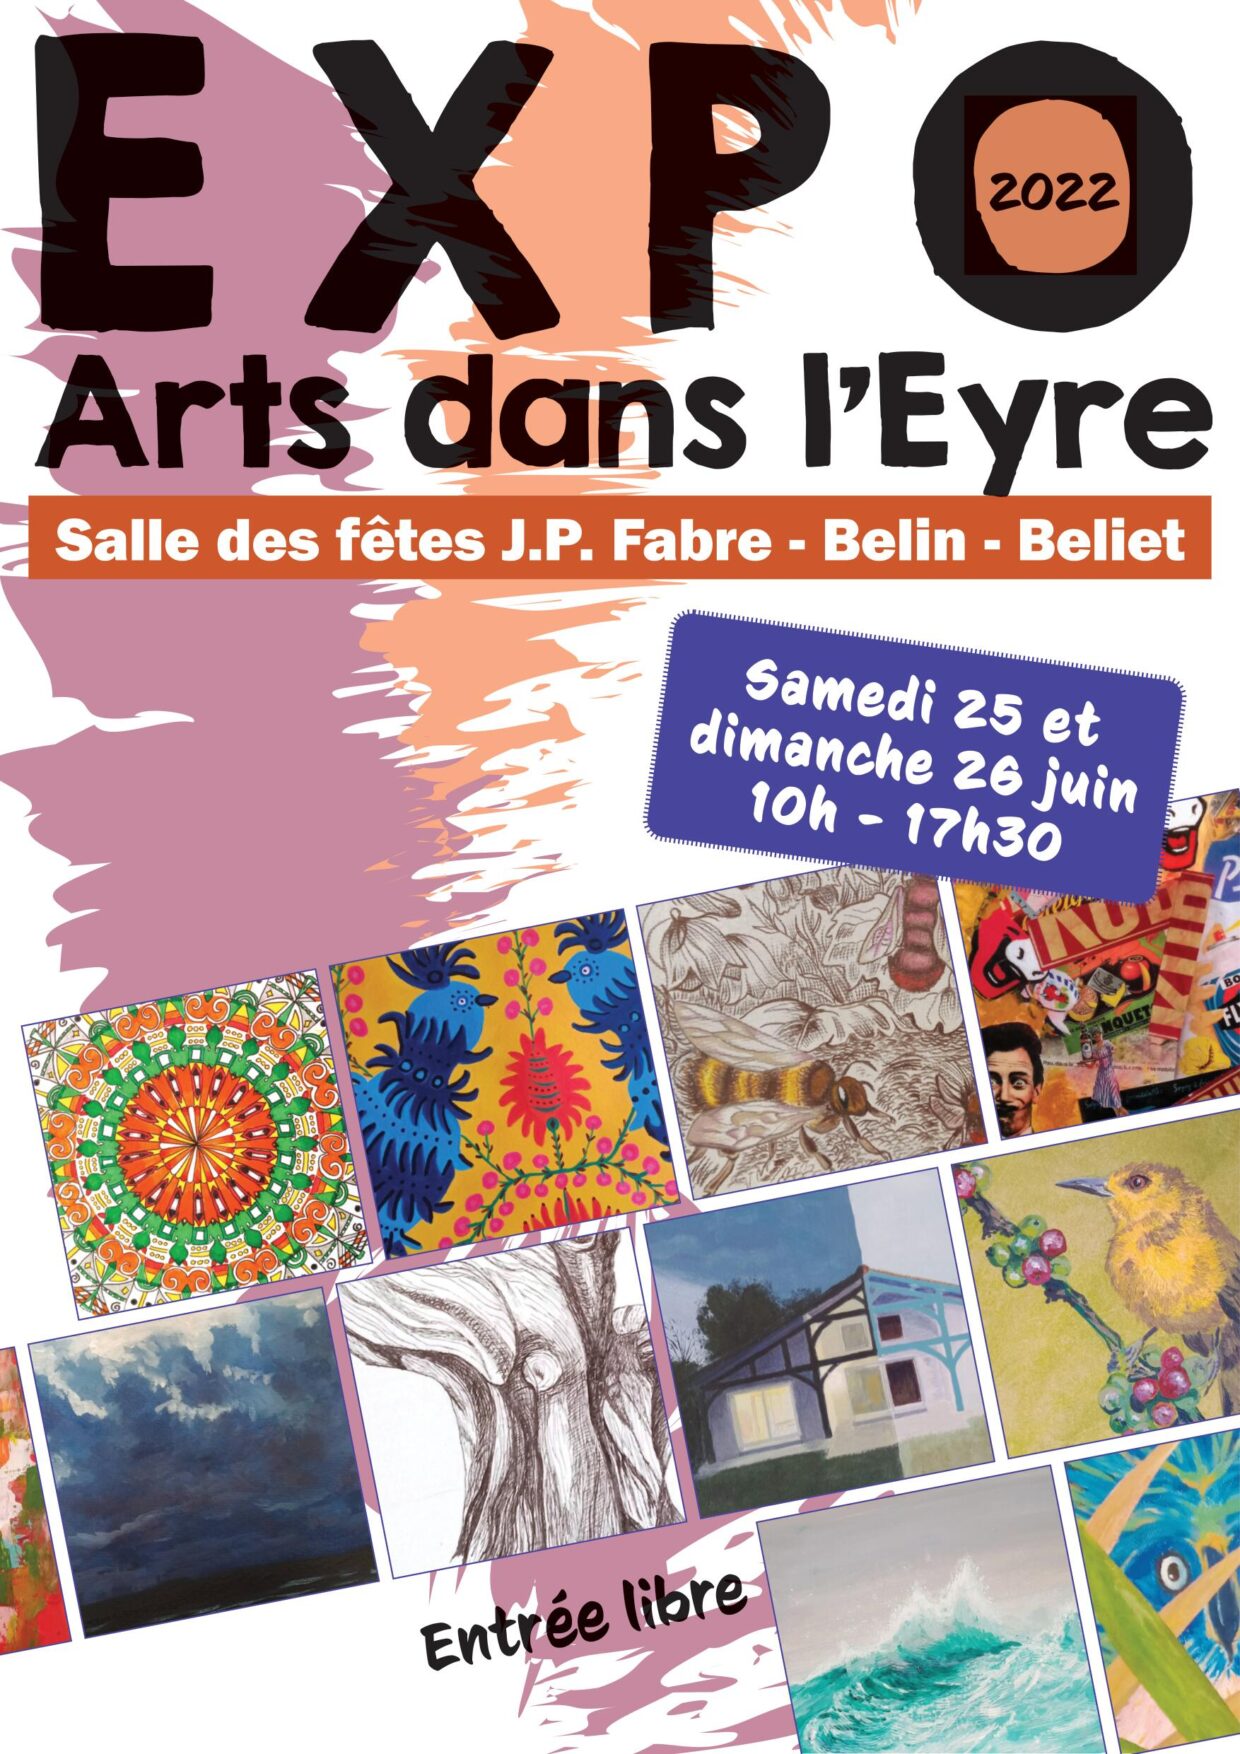 Affiche EXPOSITION 25-26 JUIN 2022 arts dans l’eyre